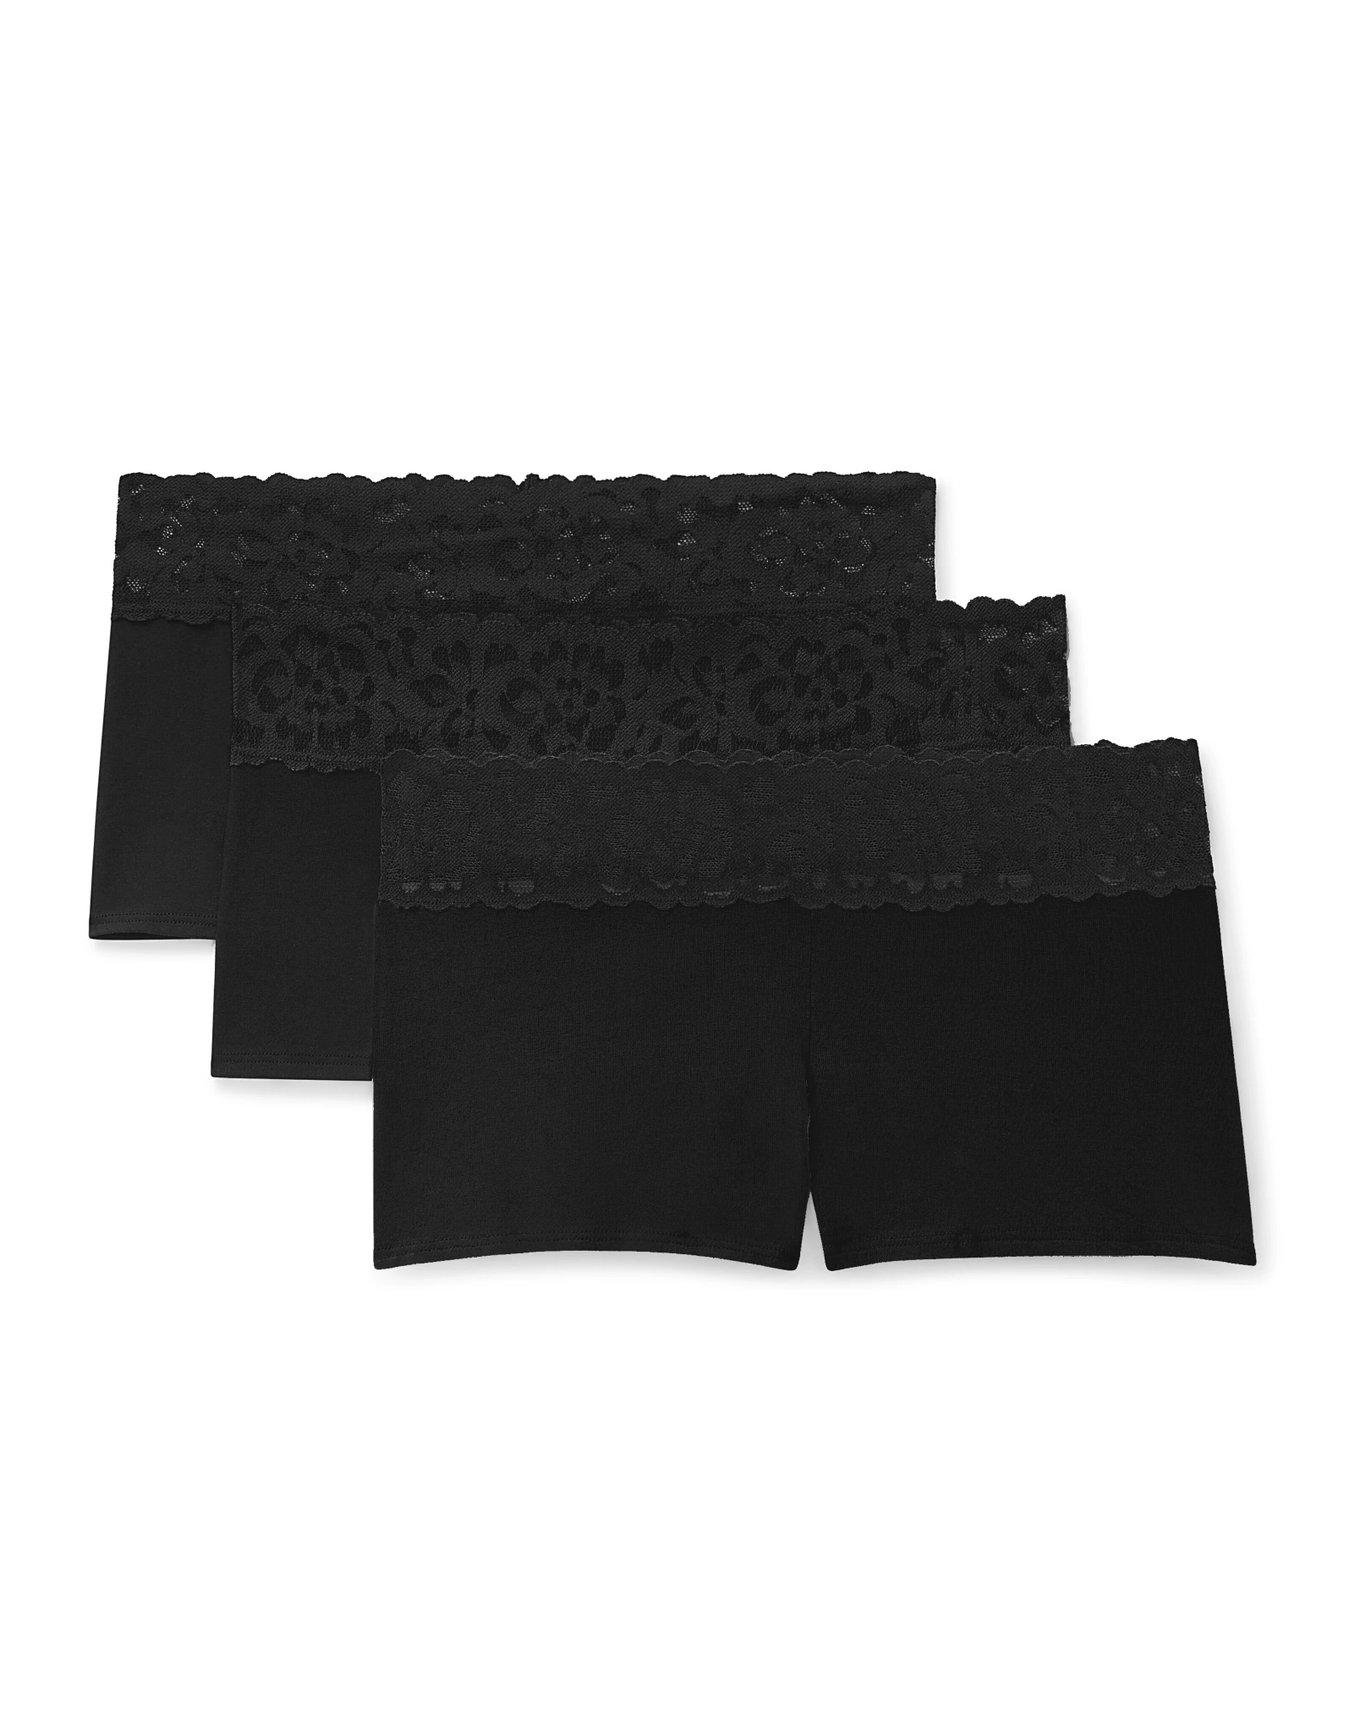 Girls Tradie 2 Pack Cotton Underwear School Shortie Briefs Black Essence  (SL2)